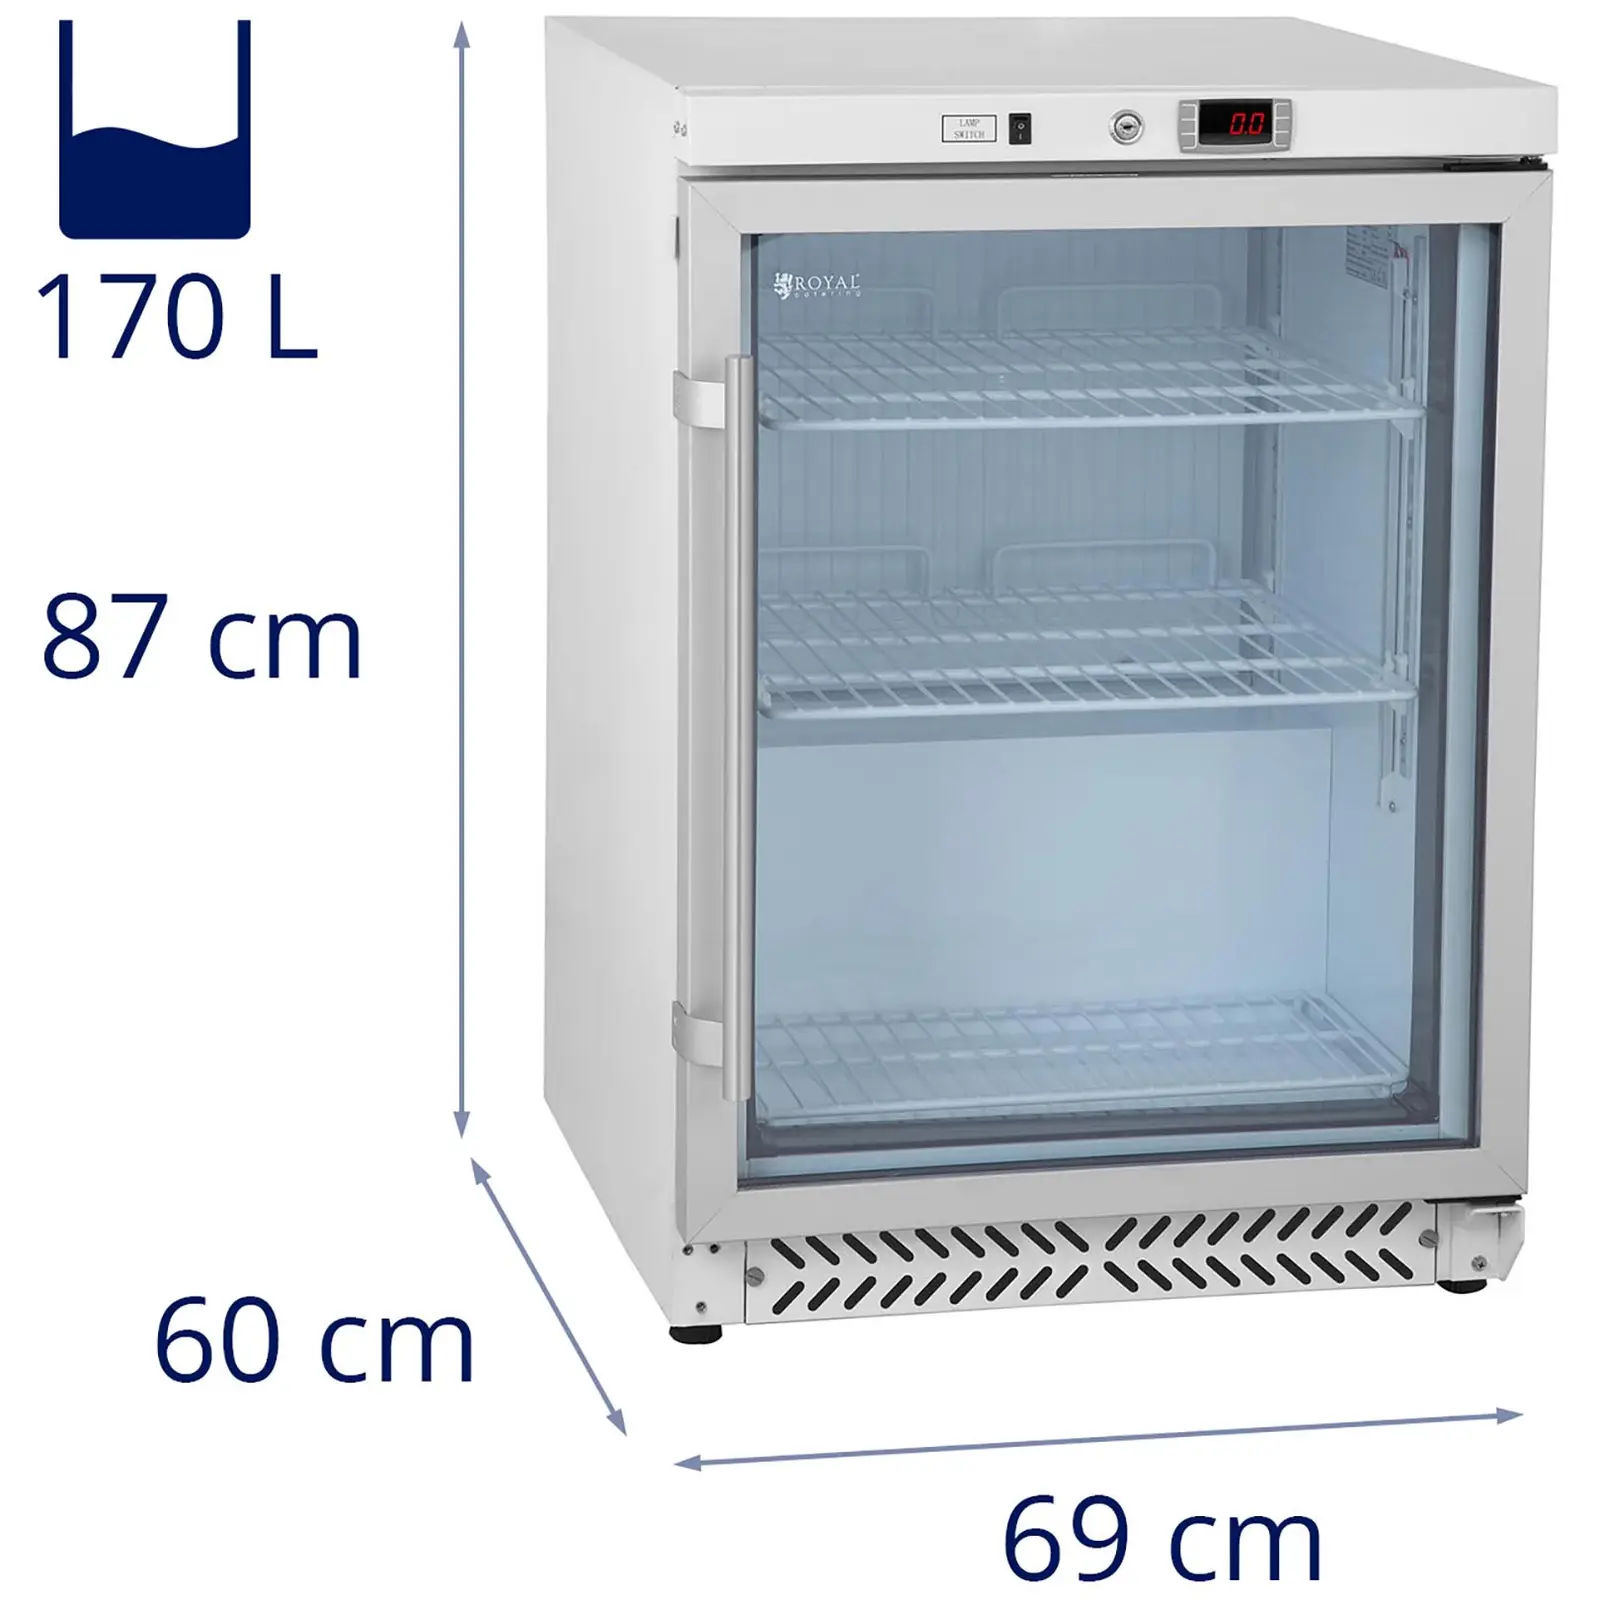 Glastürkühlschrank - Flaschenkühlschrank - 170 L